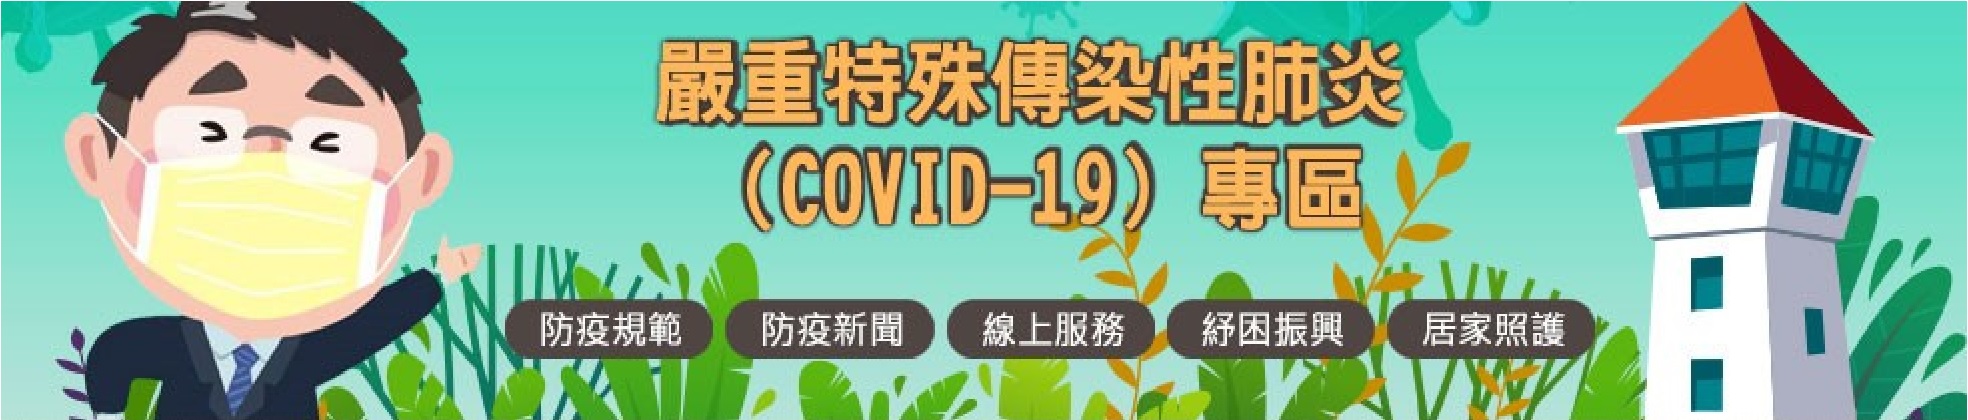 嚴重特殊傳染性肺炎COVID-19專區宣導